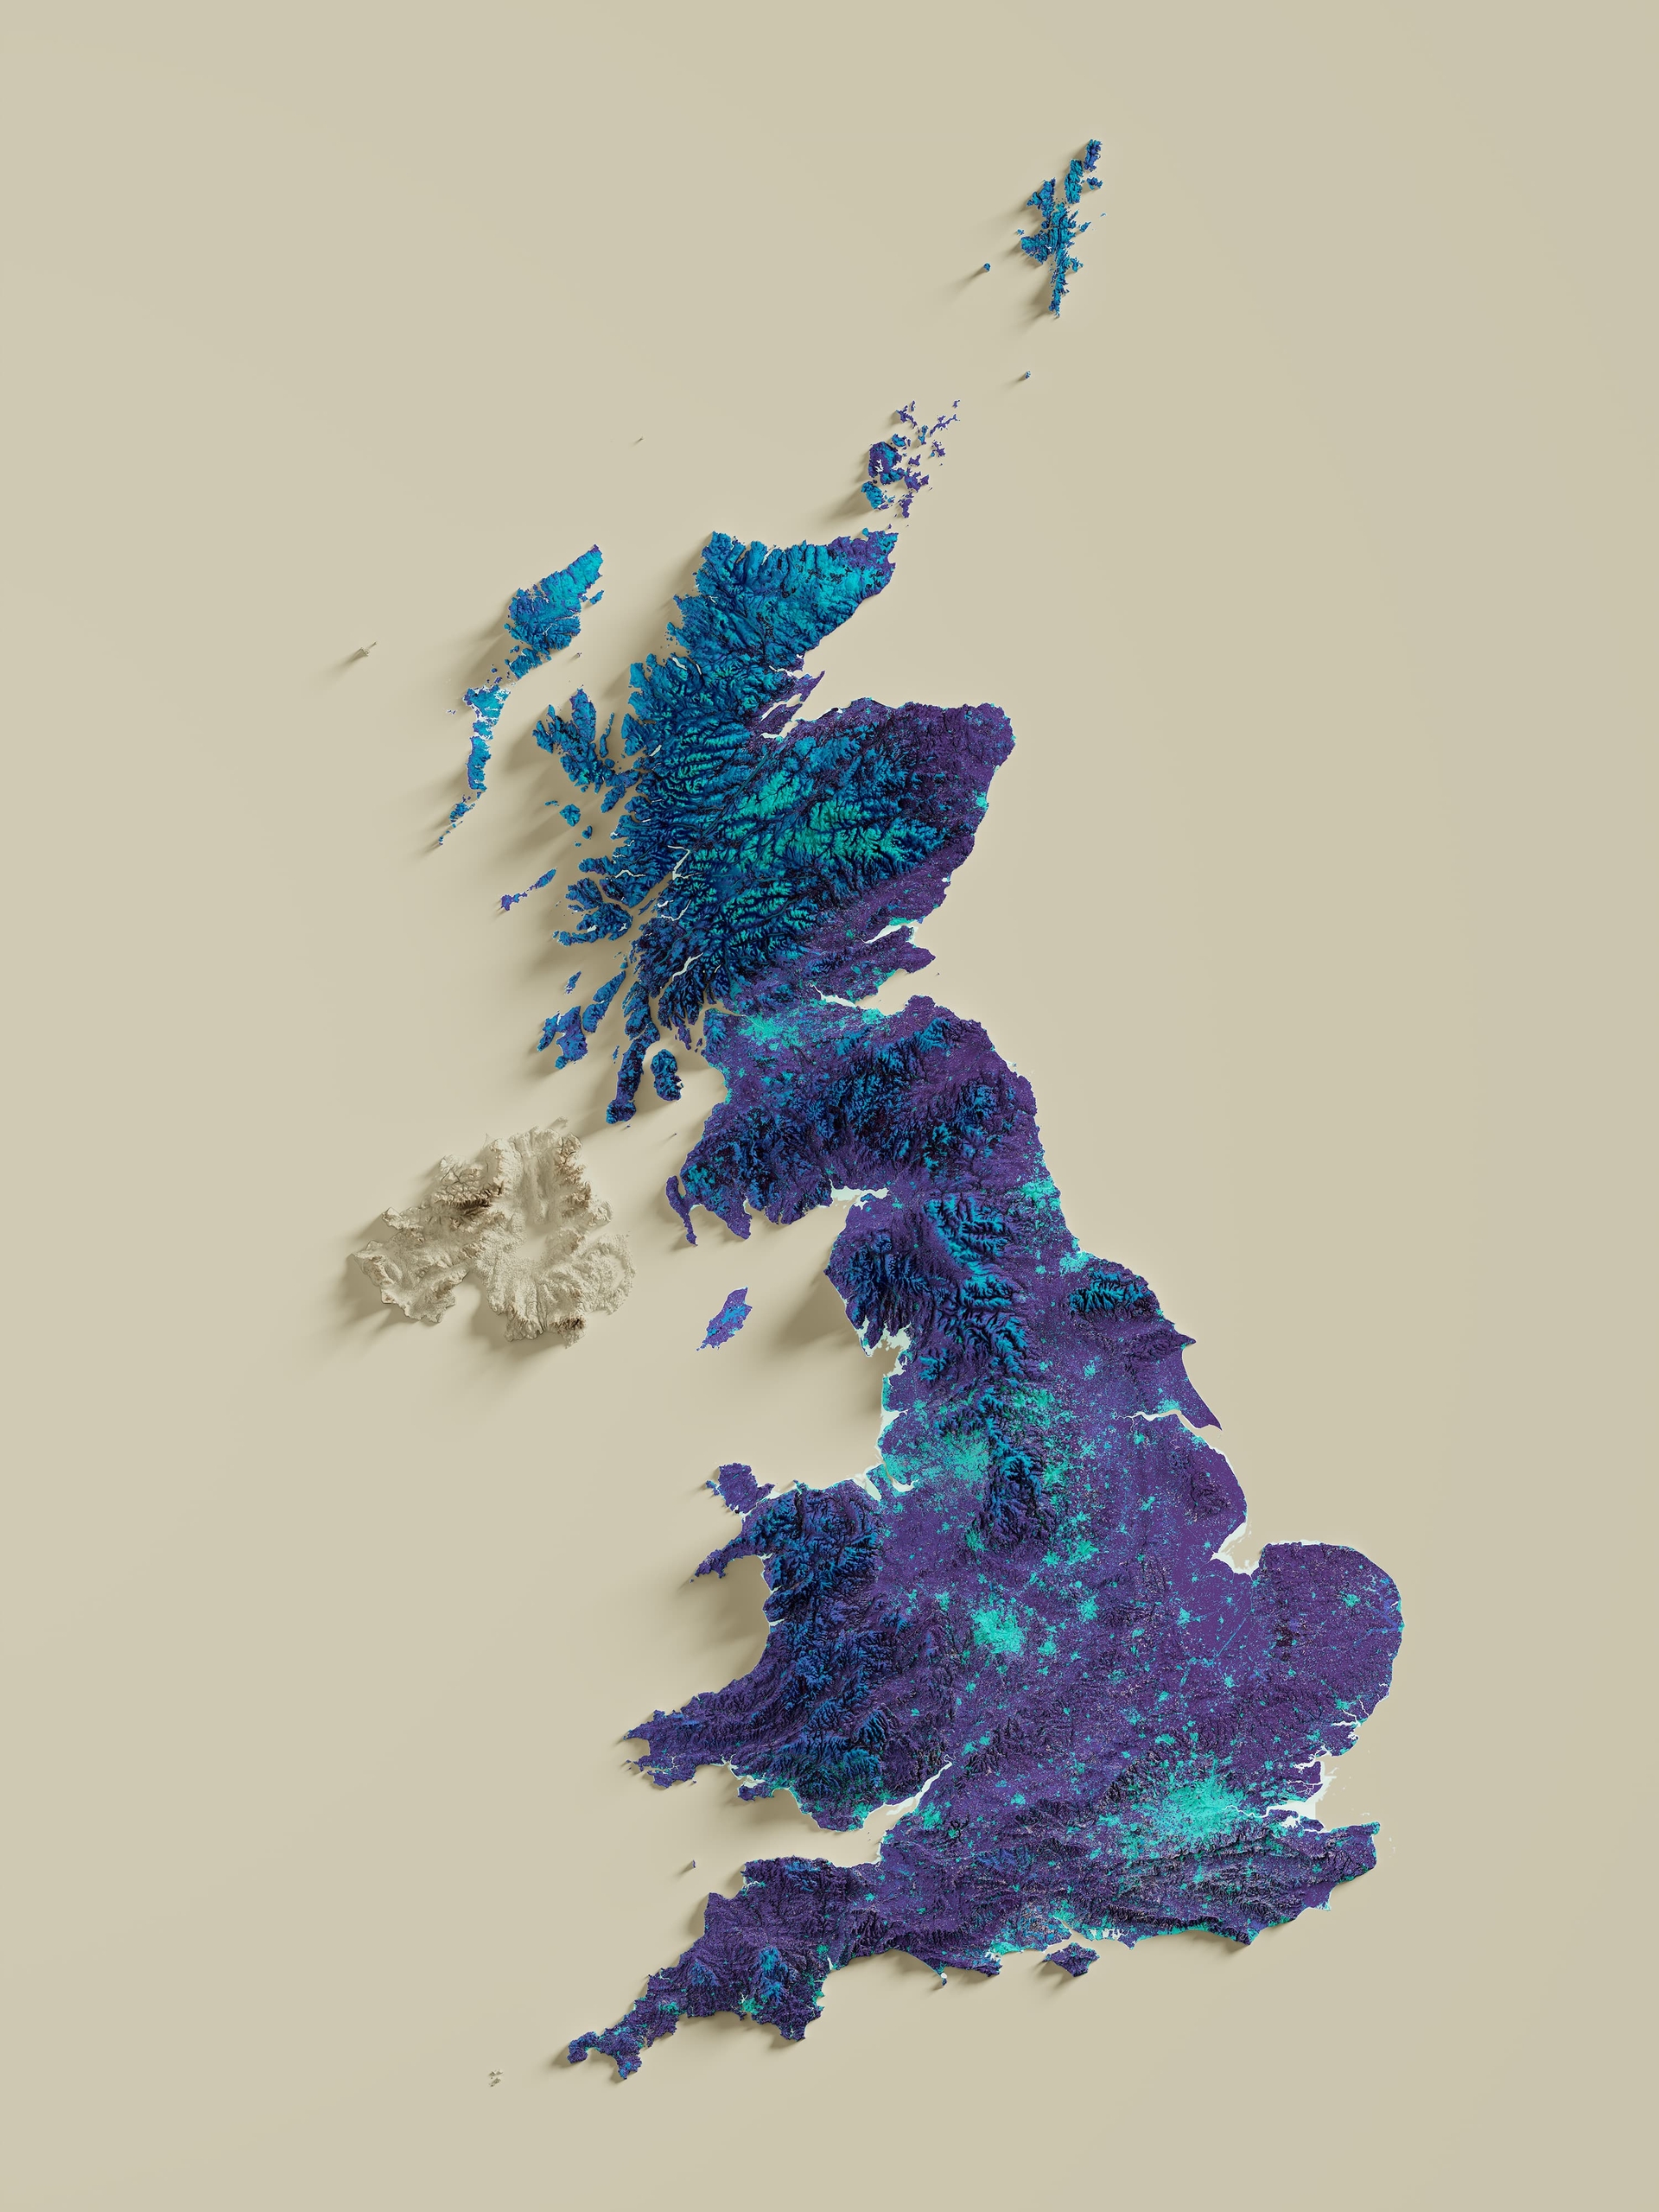 United Kingdom | Hypsometric tint - Viridis